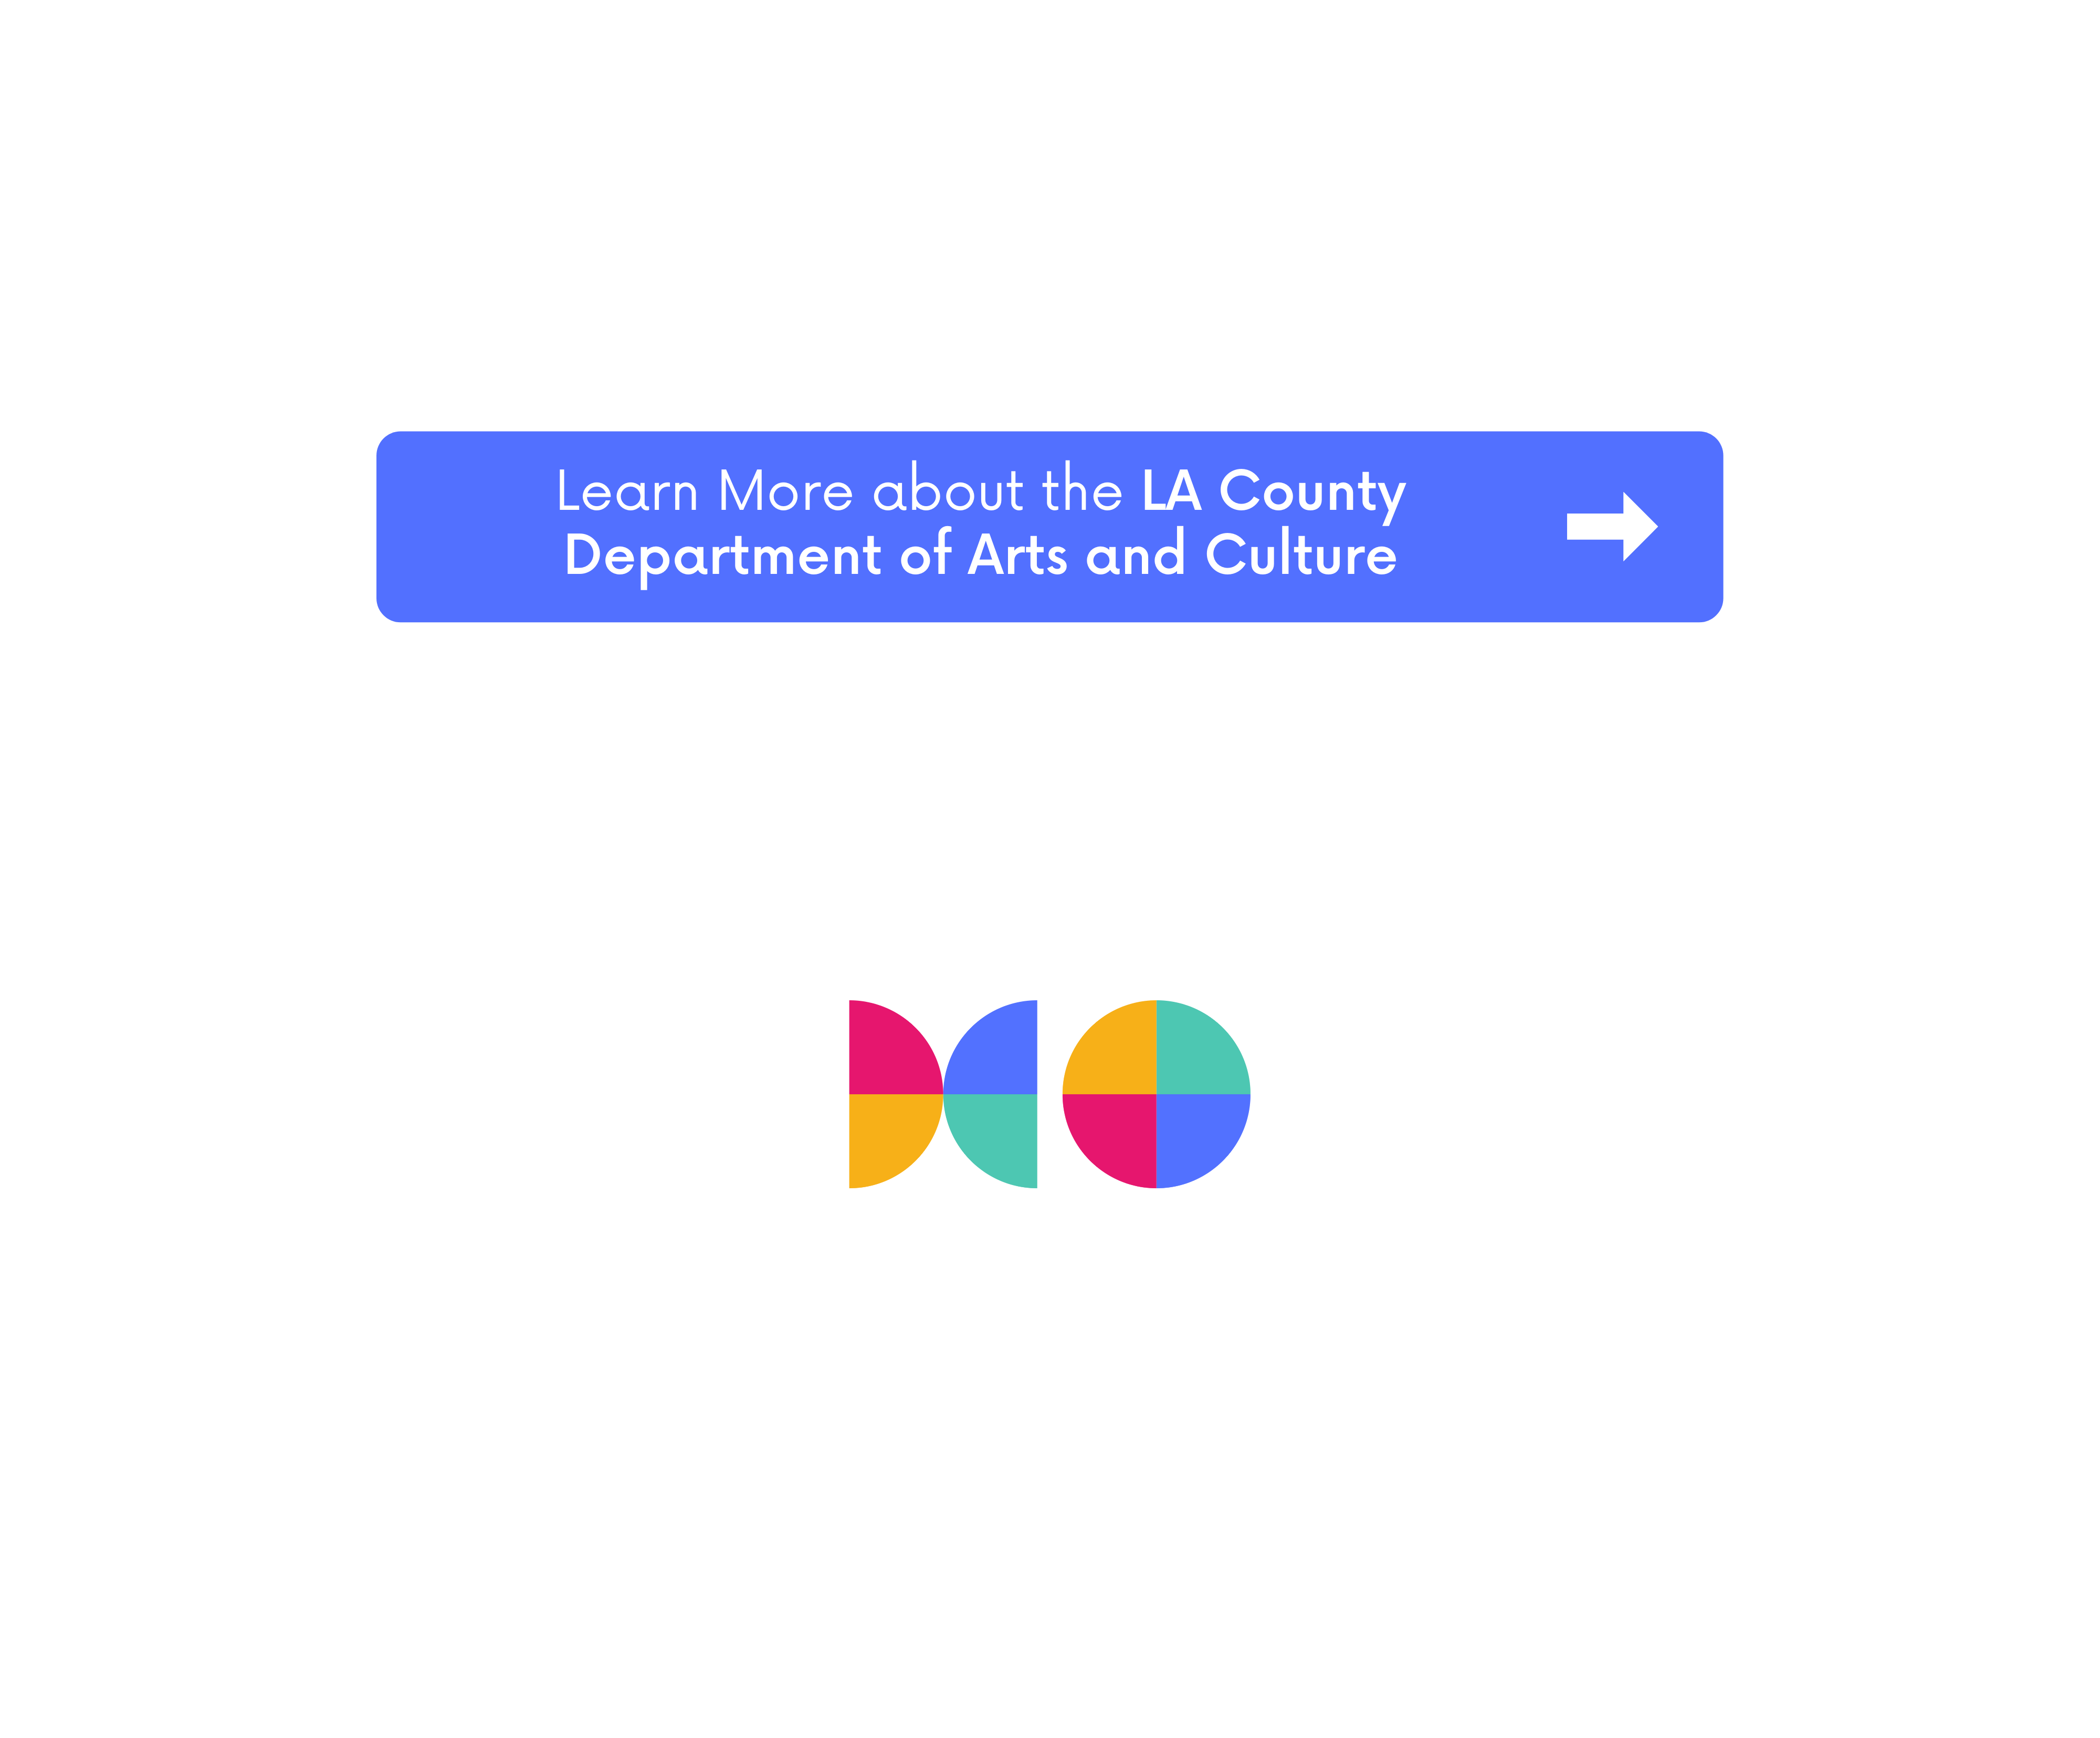 Más información sobre el Departamento de Arte y Cultura del Condado de Los Ángeles